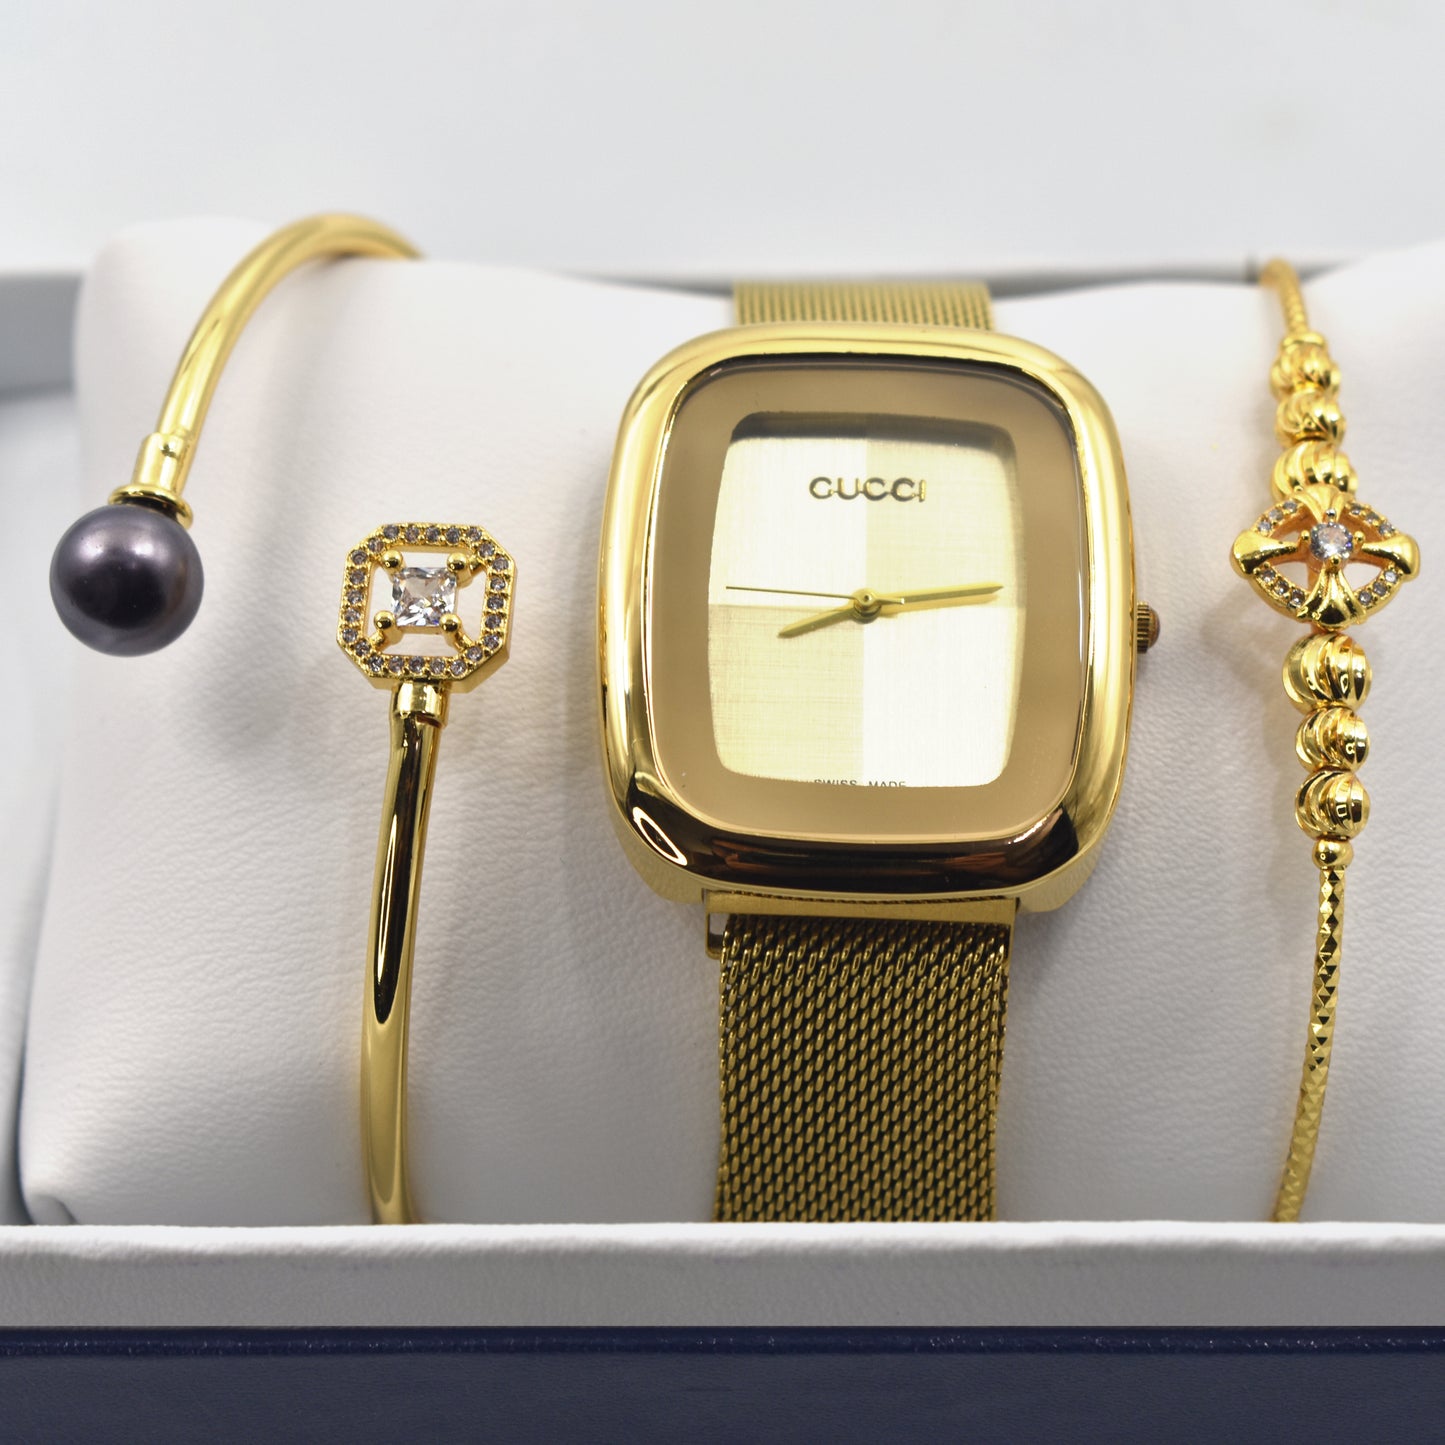 Stylish Quality Bracelet Watch for Her | GC-Watch-03